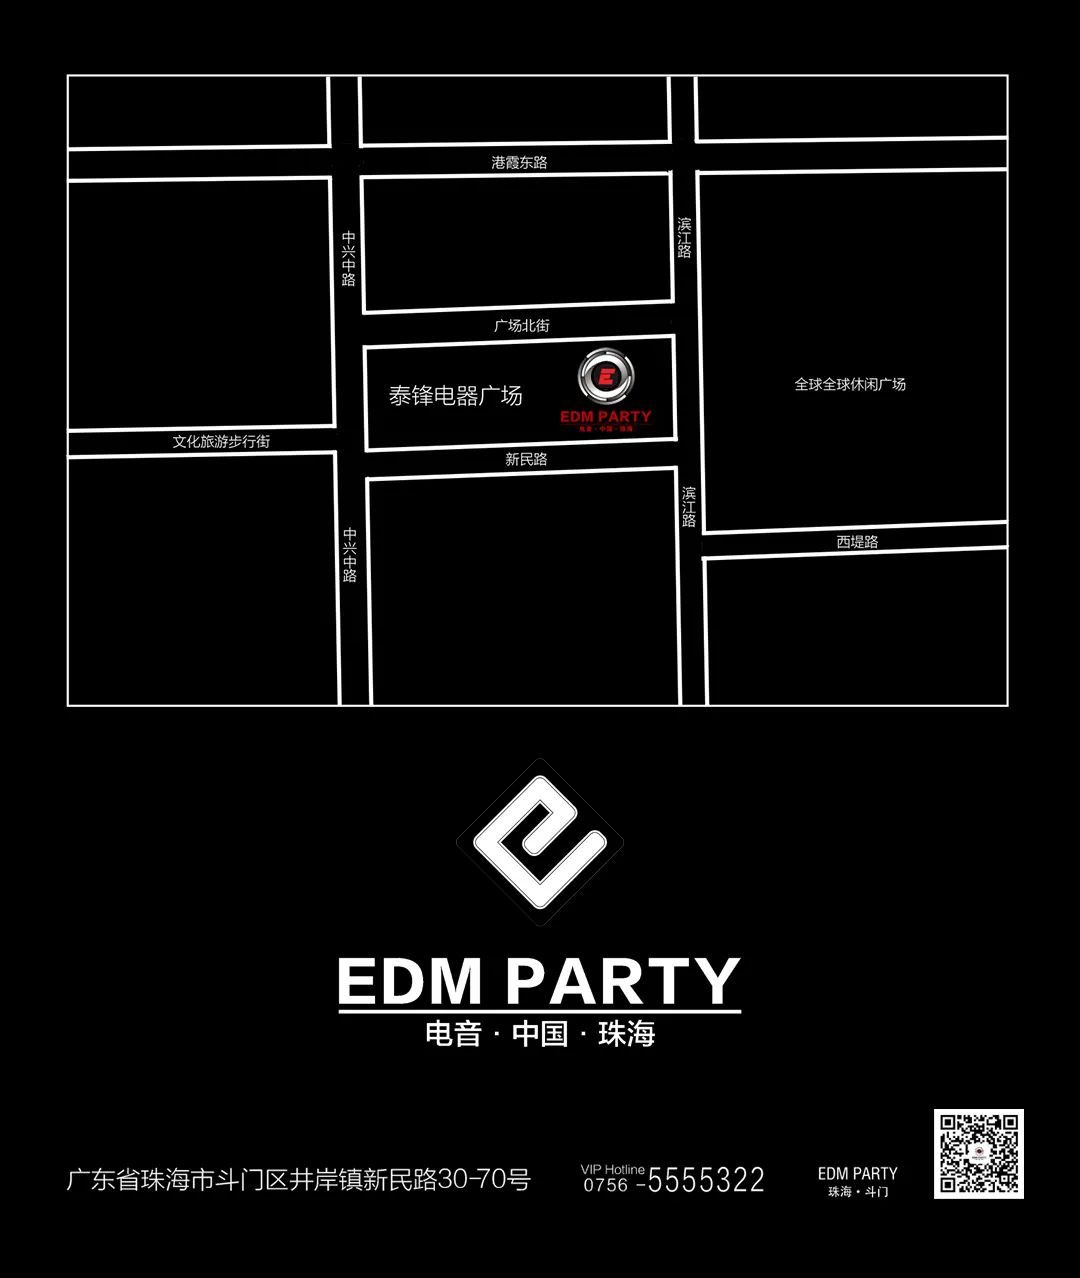 2020.08.29 网红矩阵直播-珠海EDM酒吧/EDM PARTY